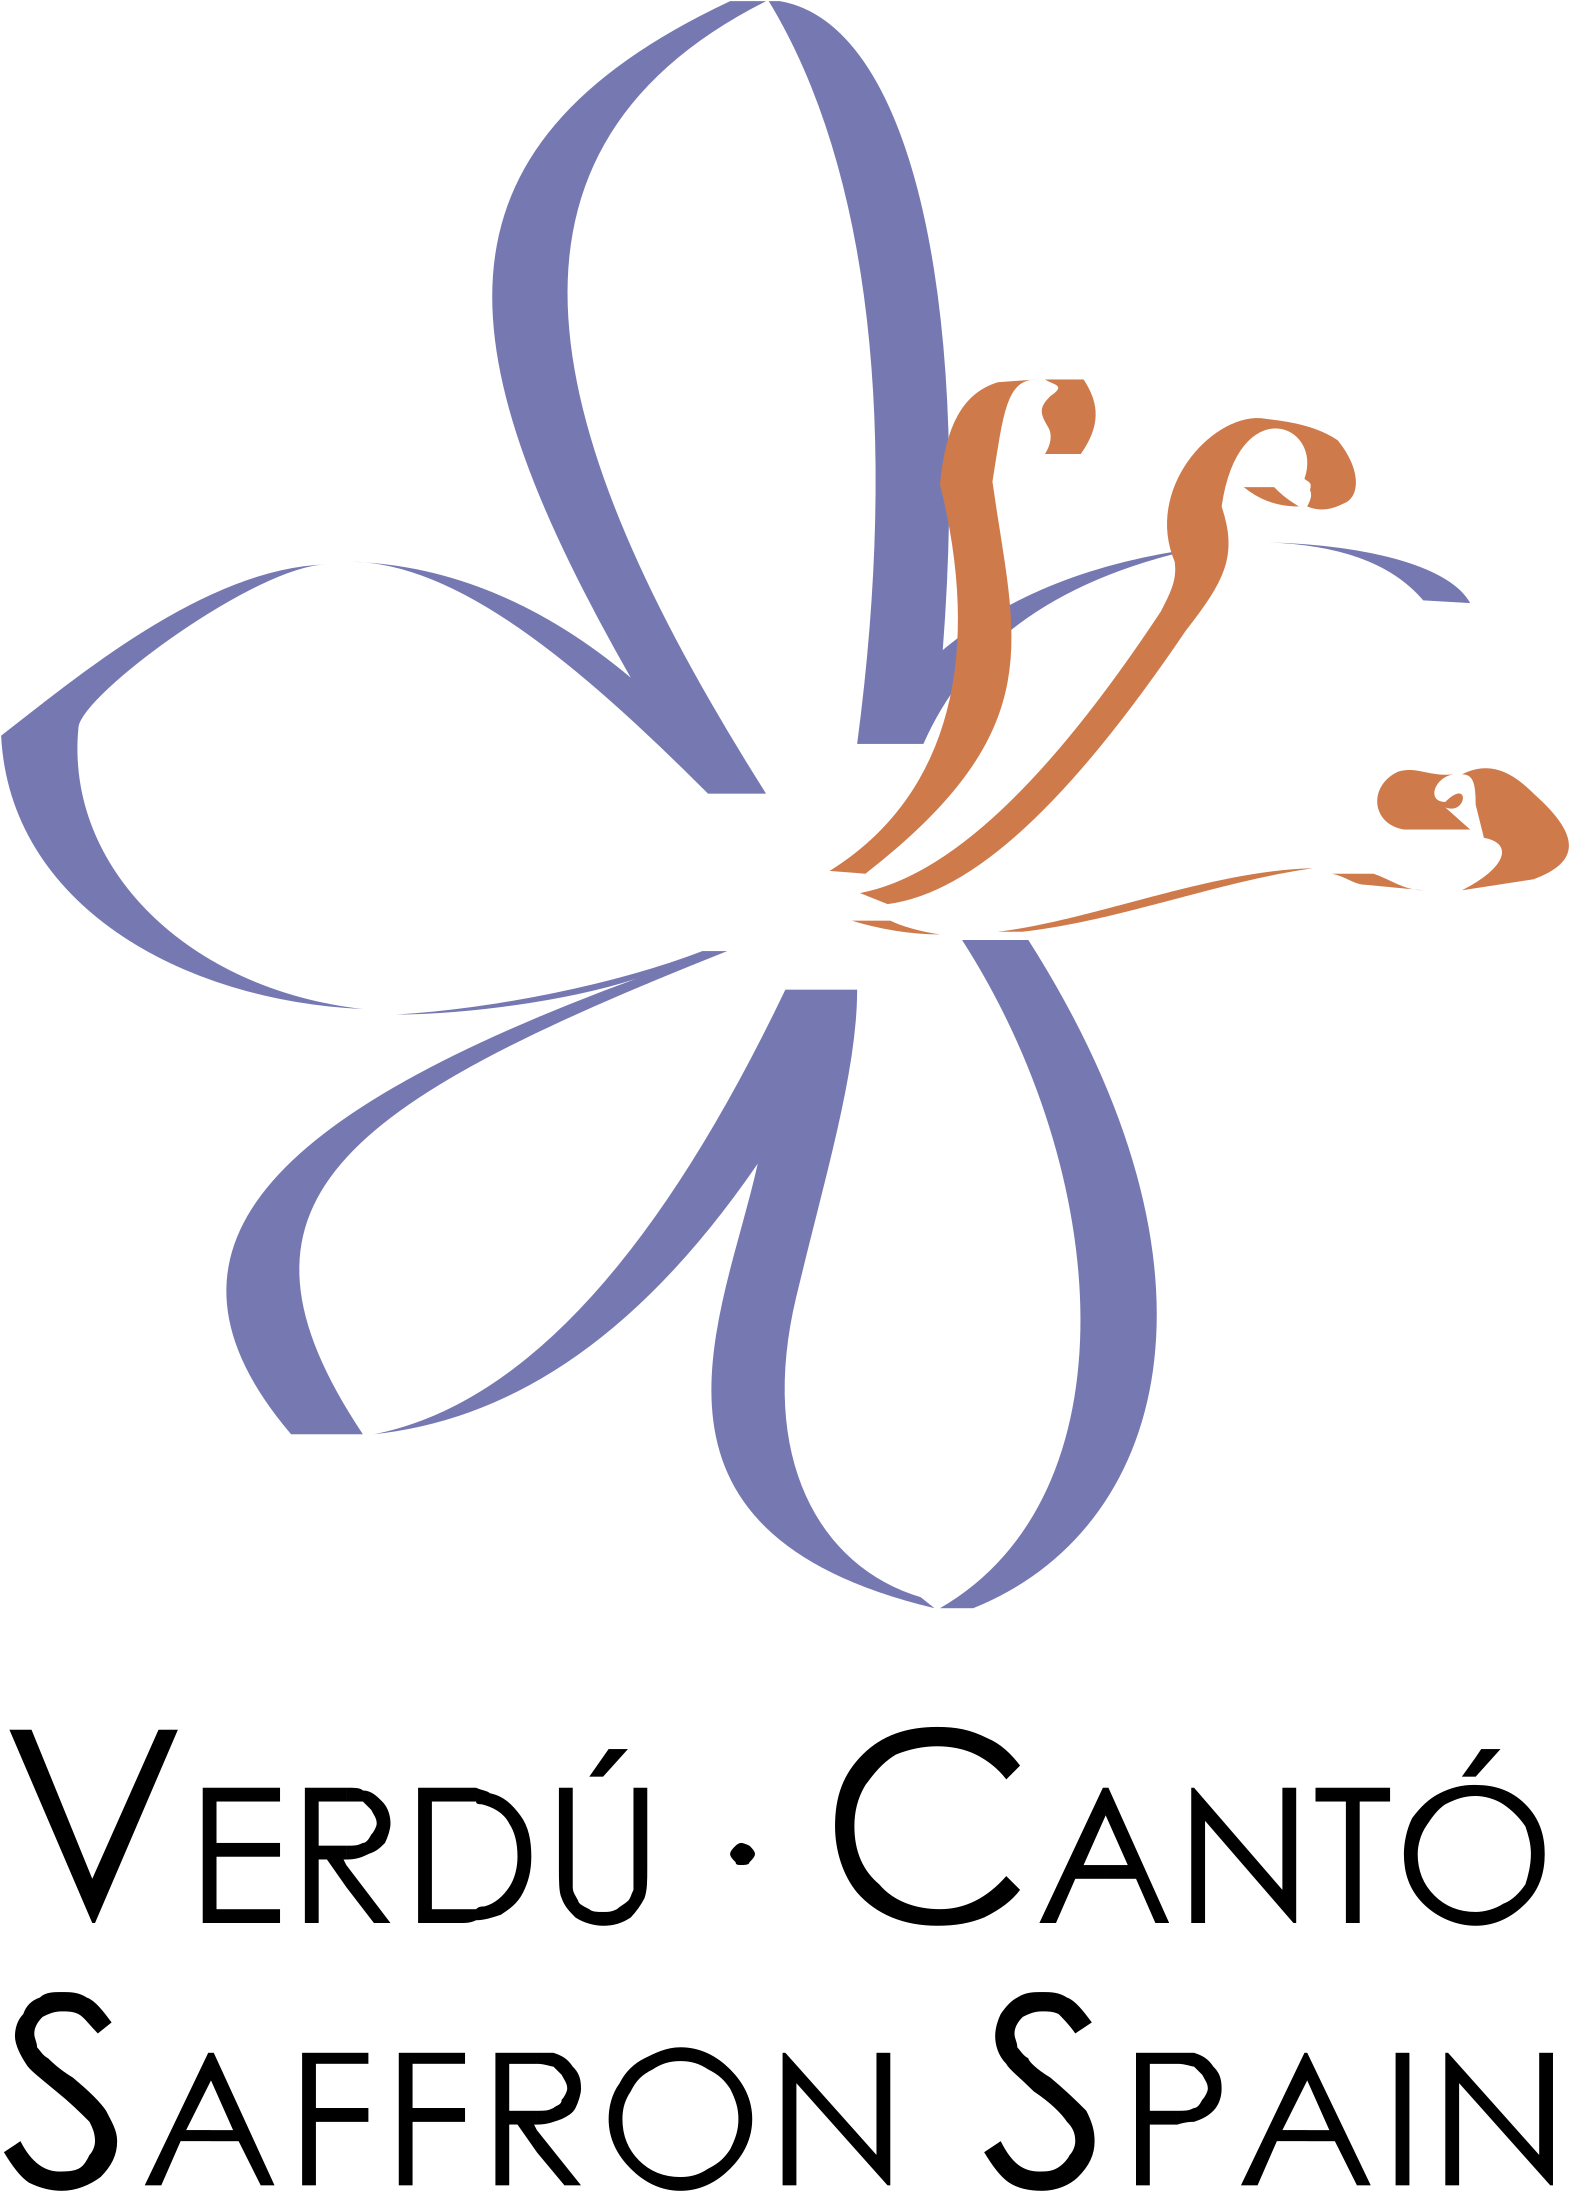 A Logo Of A Flower